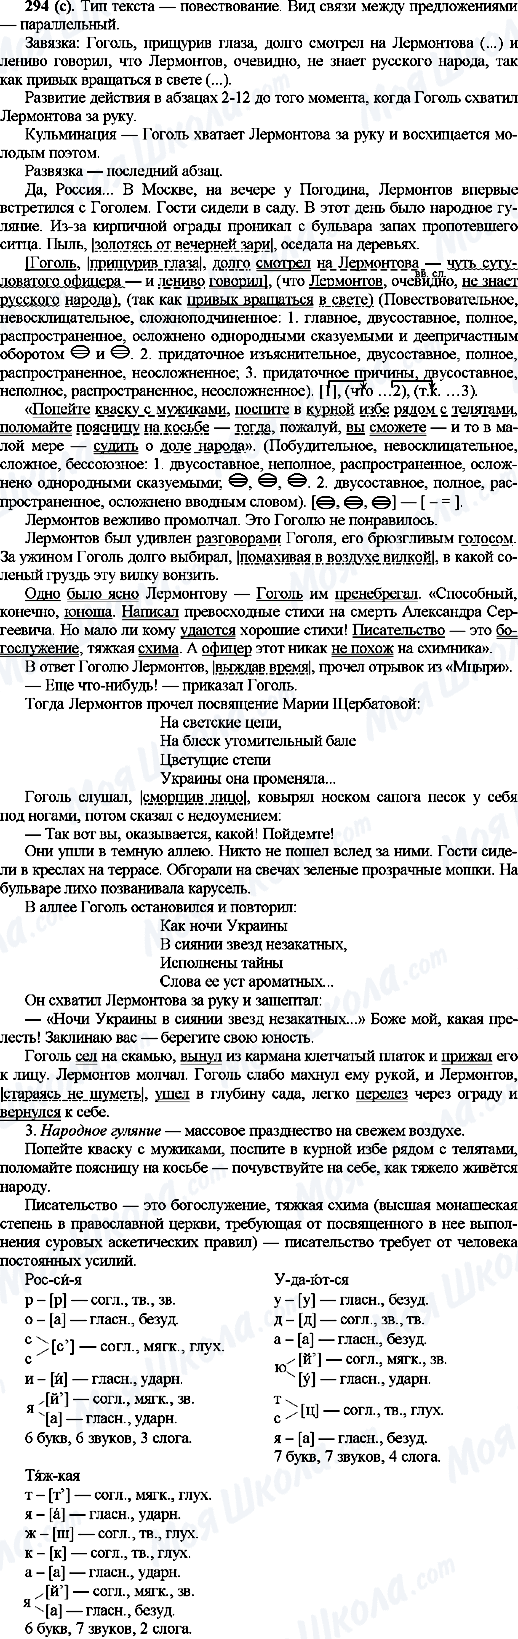 ГДЗ Російська мова 10 клас сторінка 294(с)